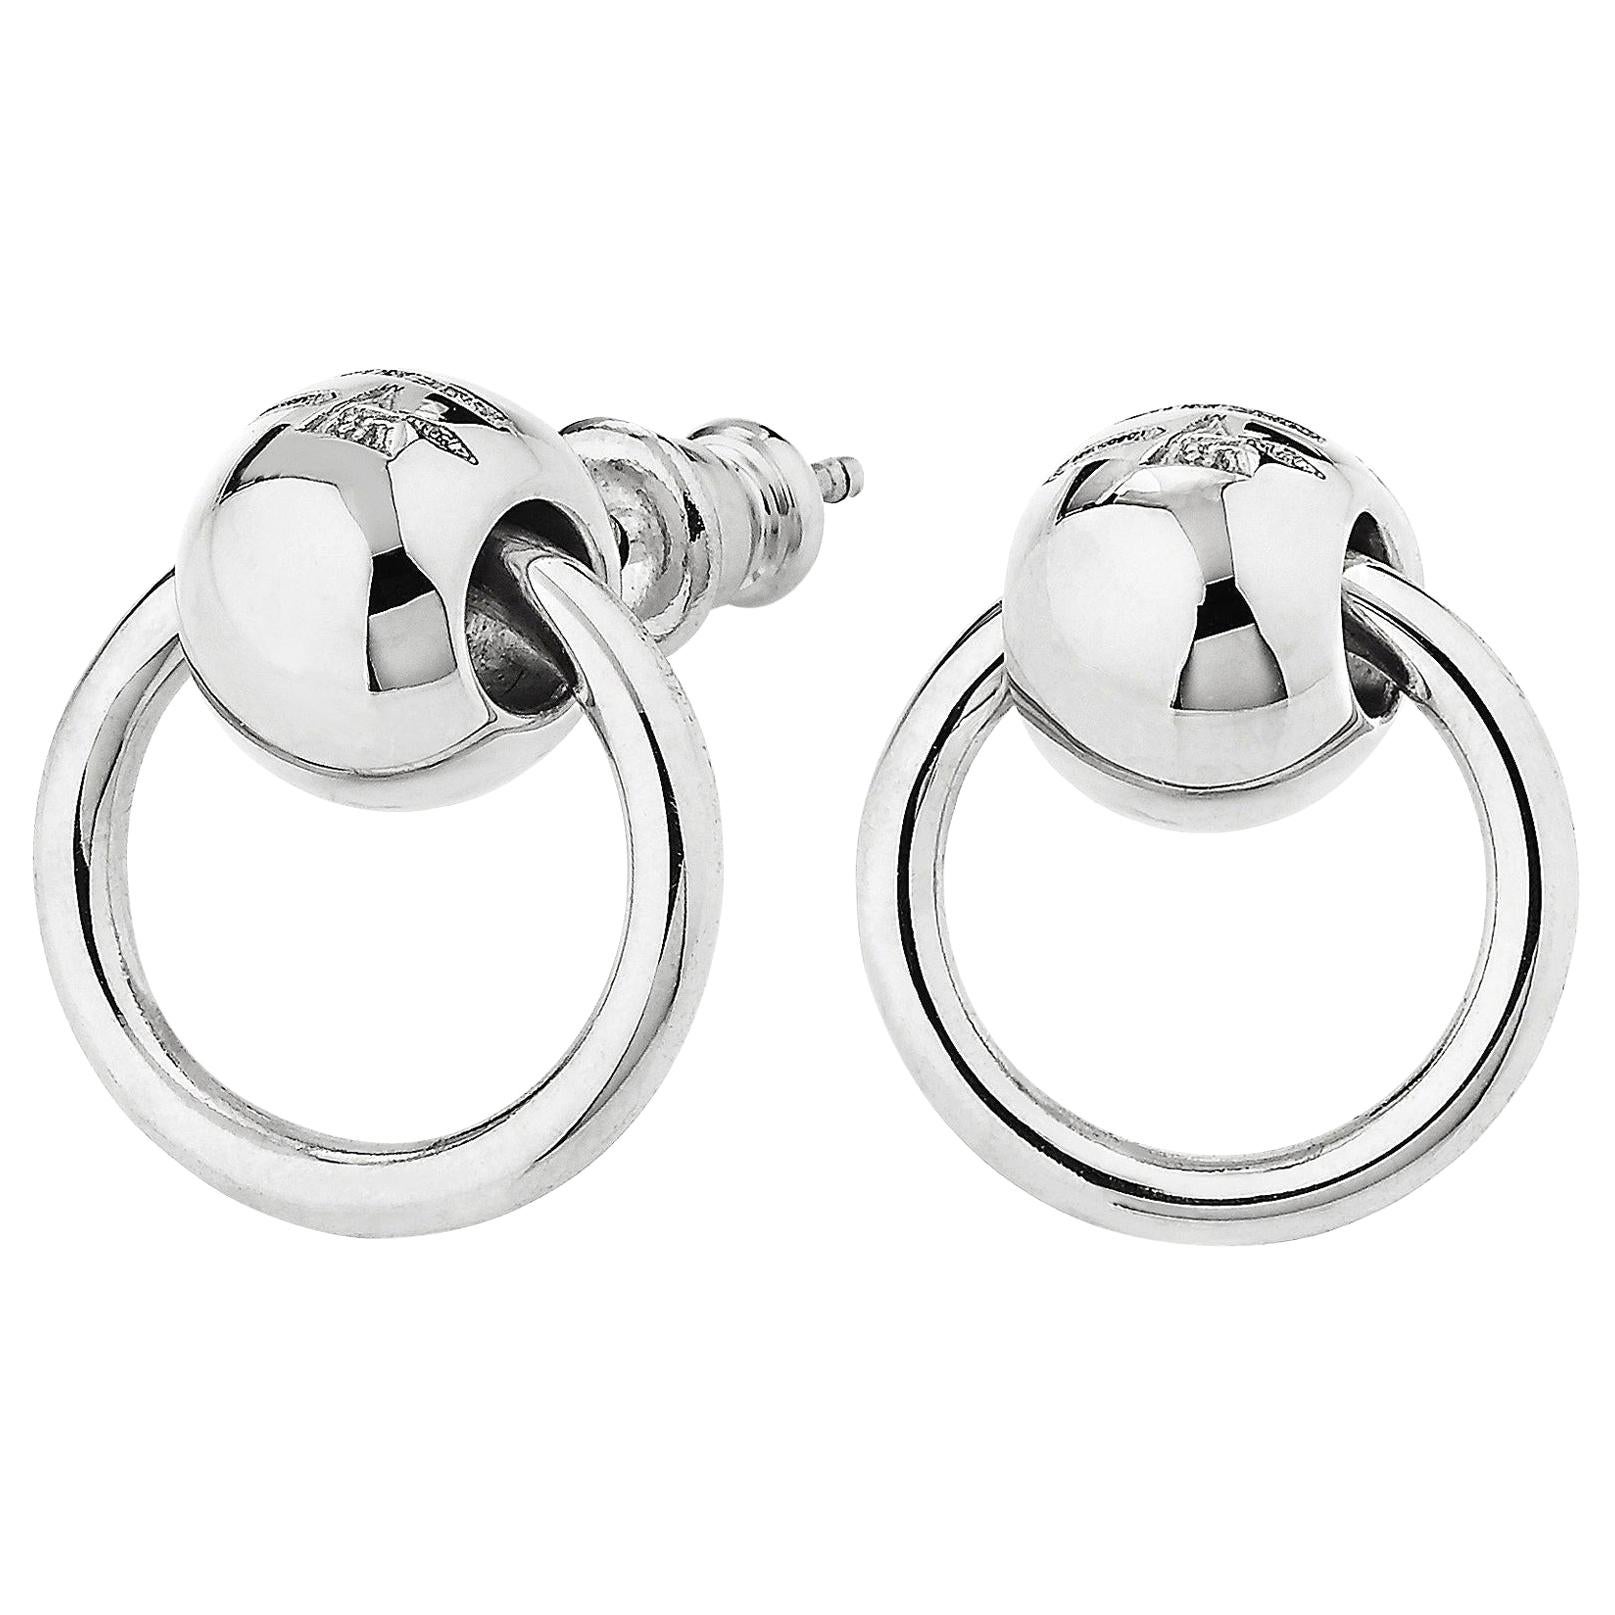 Betony Vernon "O'Ring Earrings" Sterling Silver 925